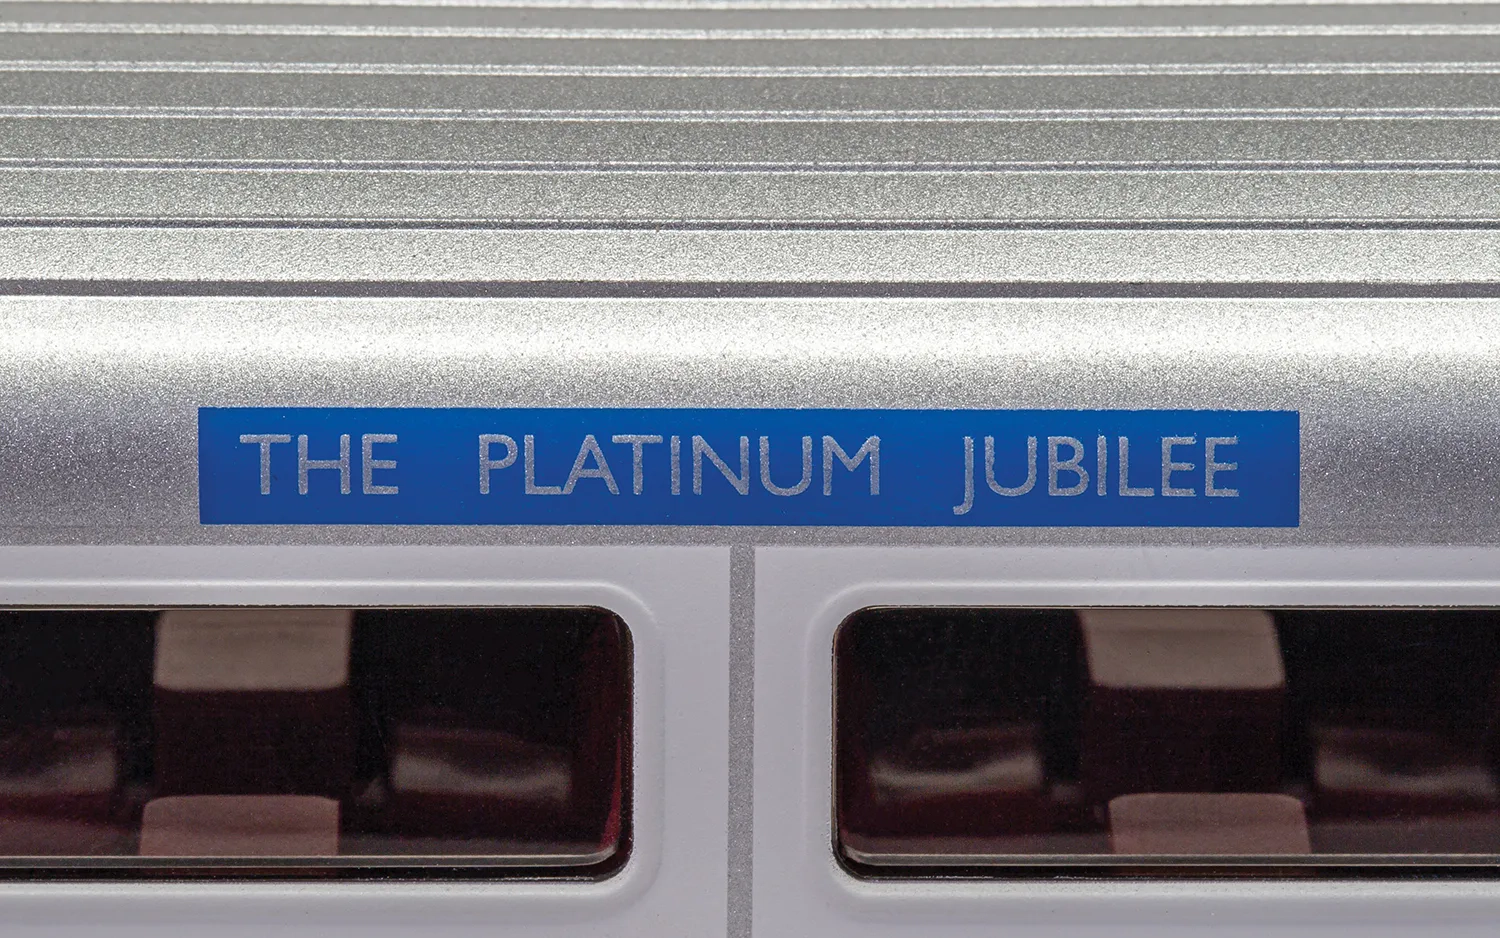 Platinum Jubilee of HM Queen Elizabeth II, Mk3 Sliding Door, Trailer Composite Catering, ER0052 - Era 11